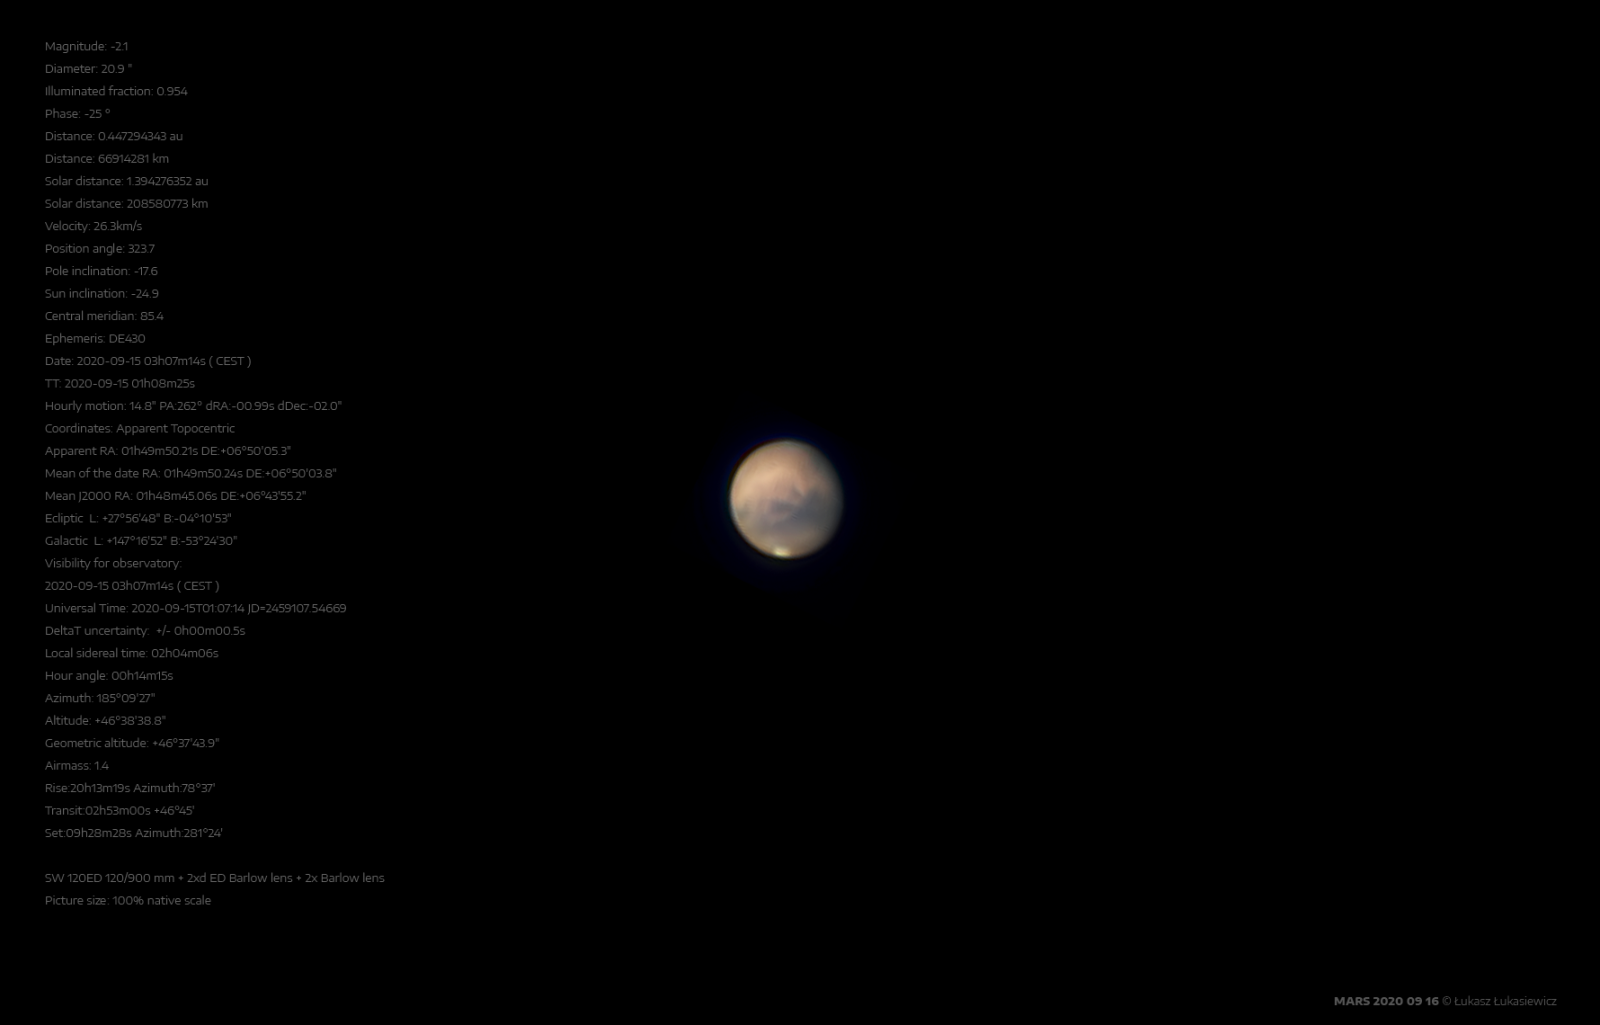 MARS-2020-09-16d.png